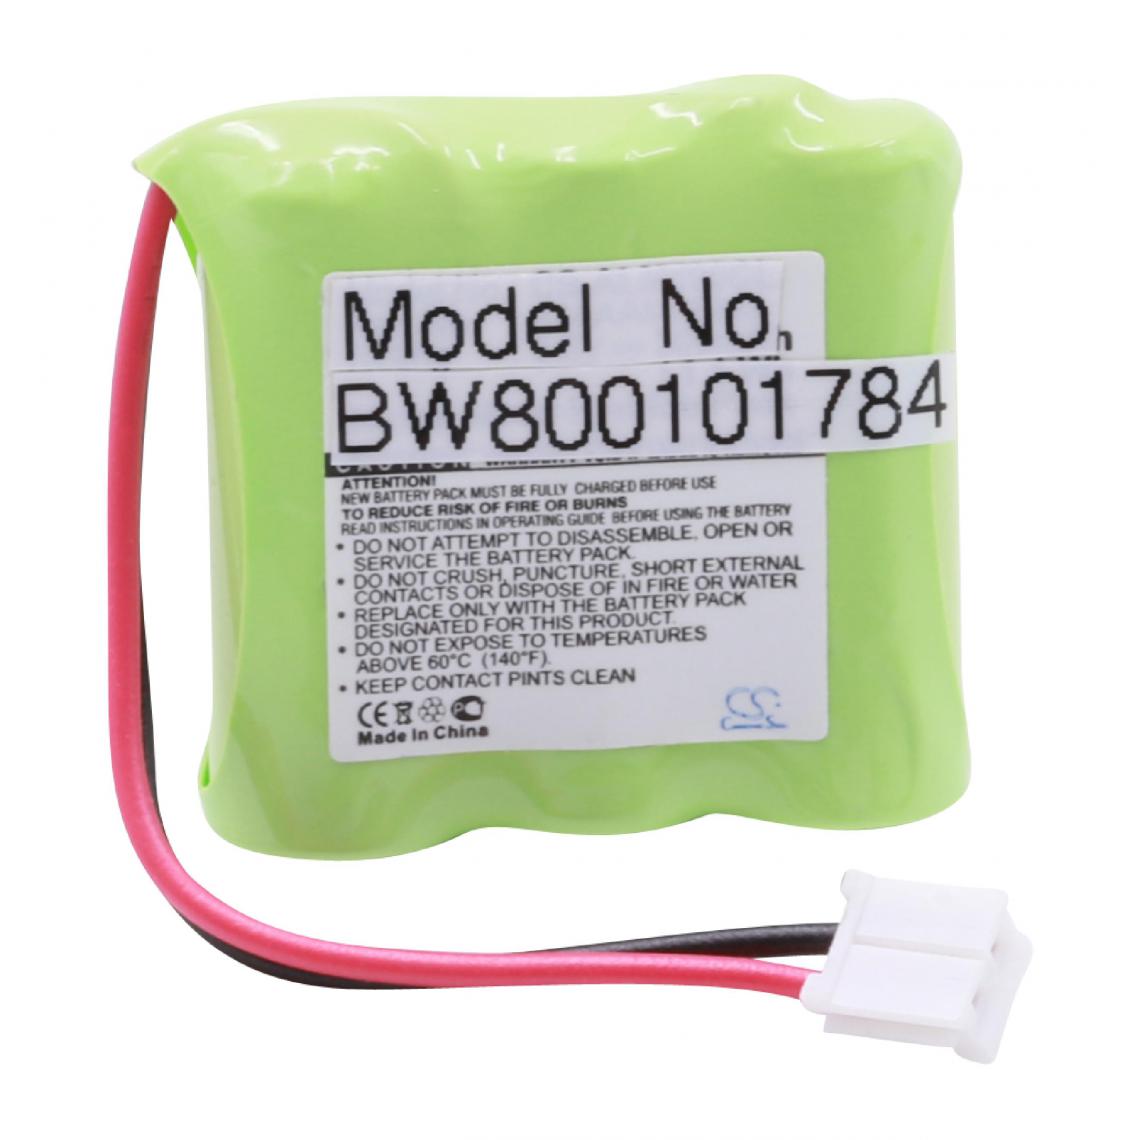 Vhbw - vhbw NiMH batterie 300mAh (3.6V) pour téléphone fixe sans fil vtech IA5863, IA5870, IA5878, IA5879, IA5882, IA5890, T2326, T2350, T2351, T2451 - Batterie téléphone